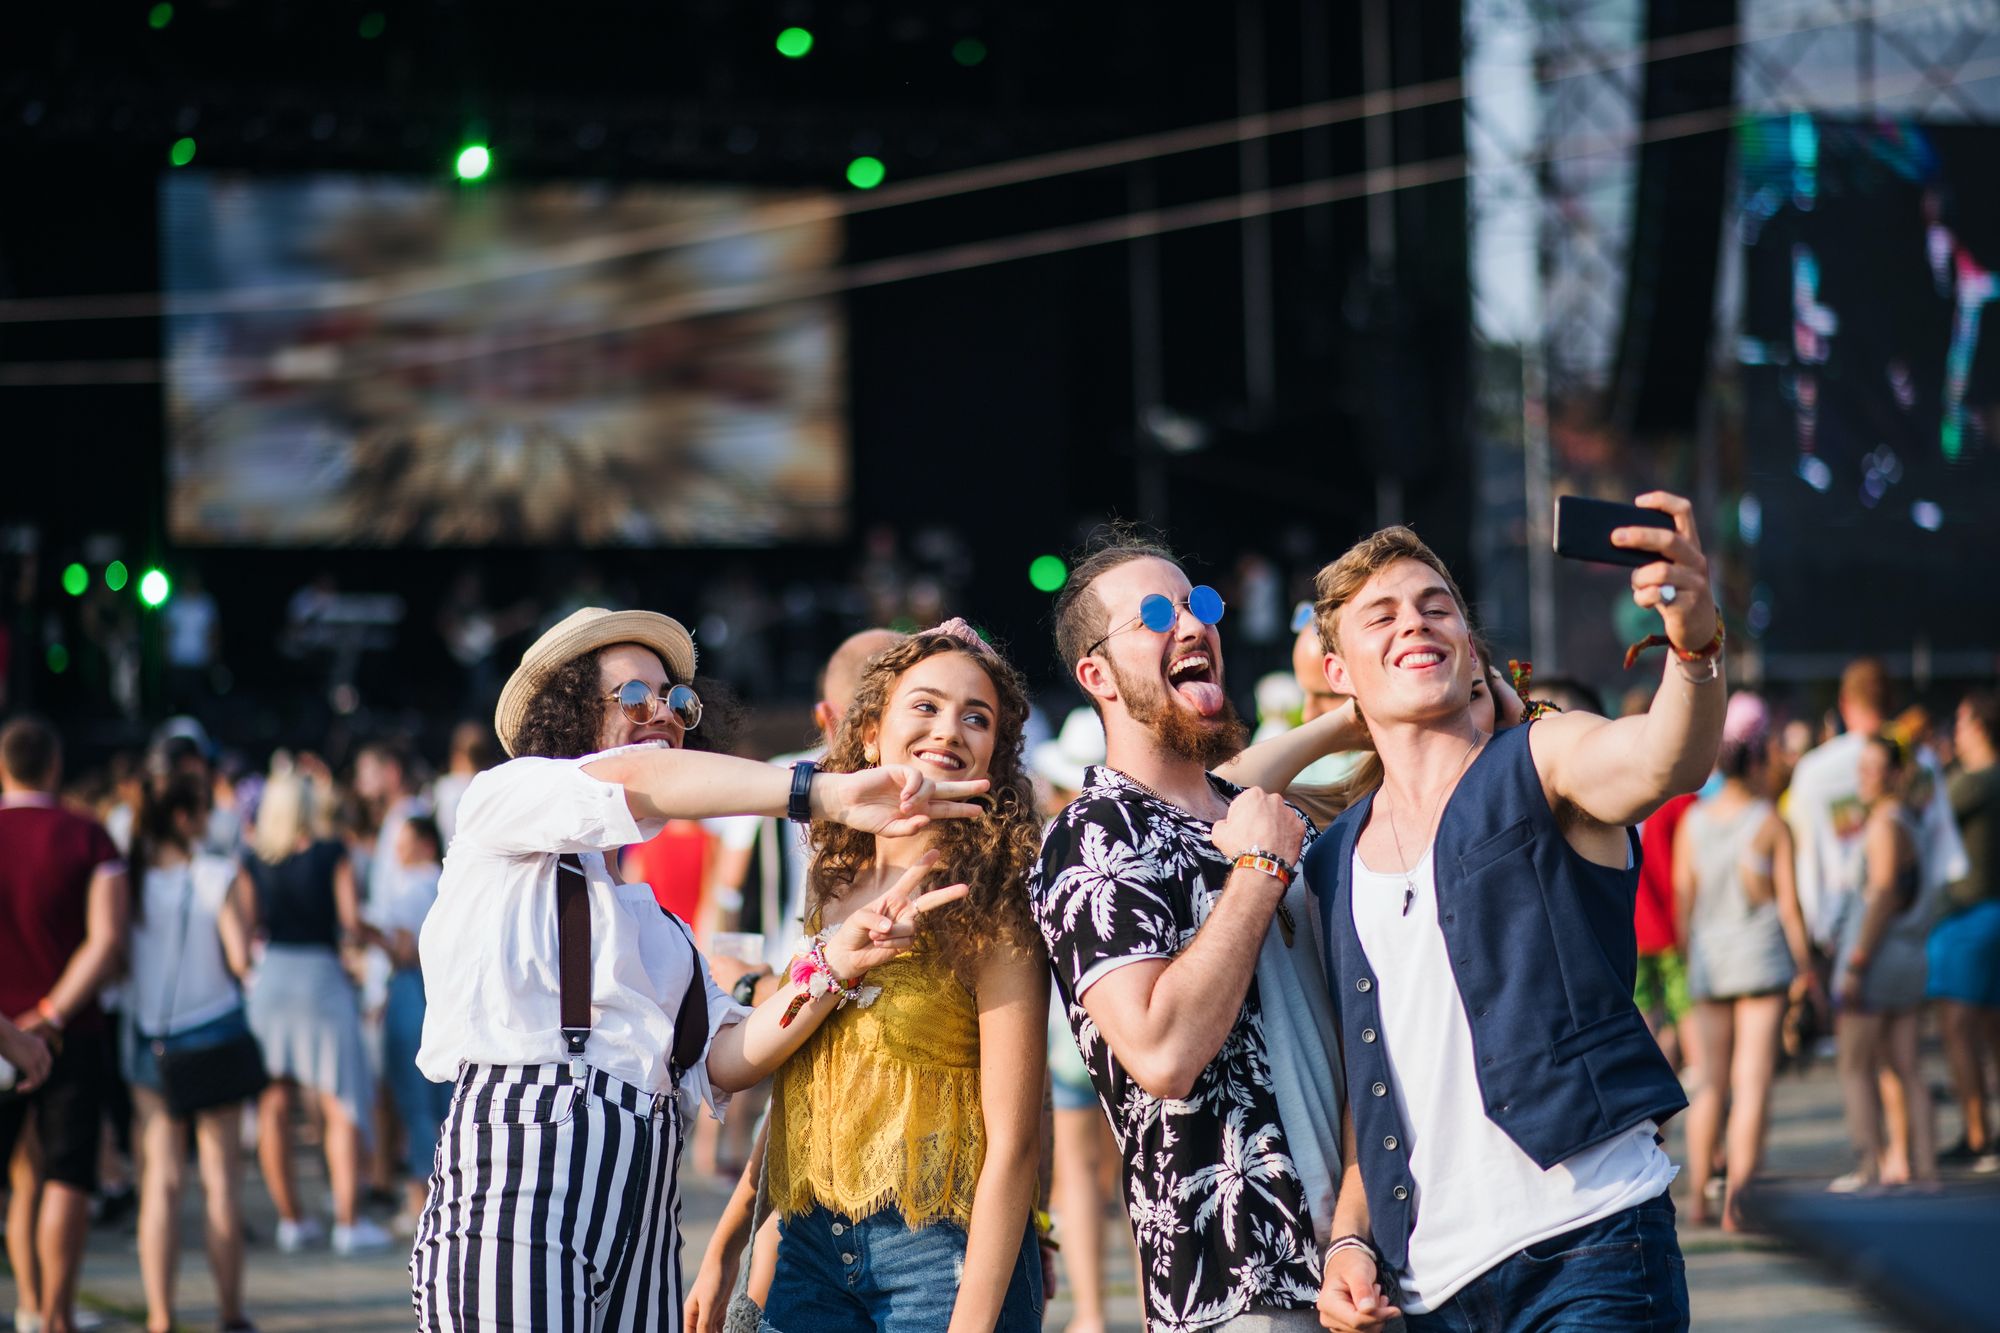 Neljä henkeä poseeraamassa selfie-kuvaan festivaaleilla.